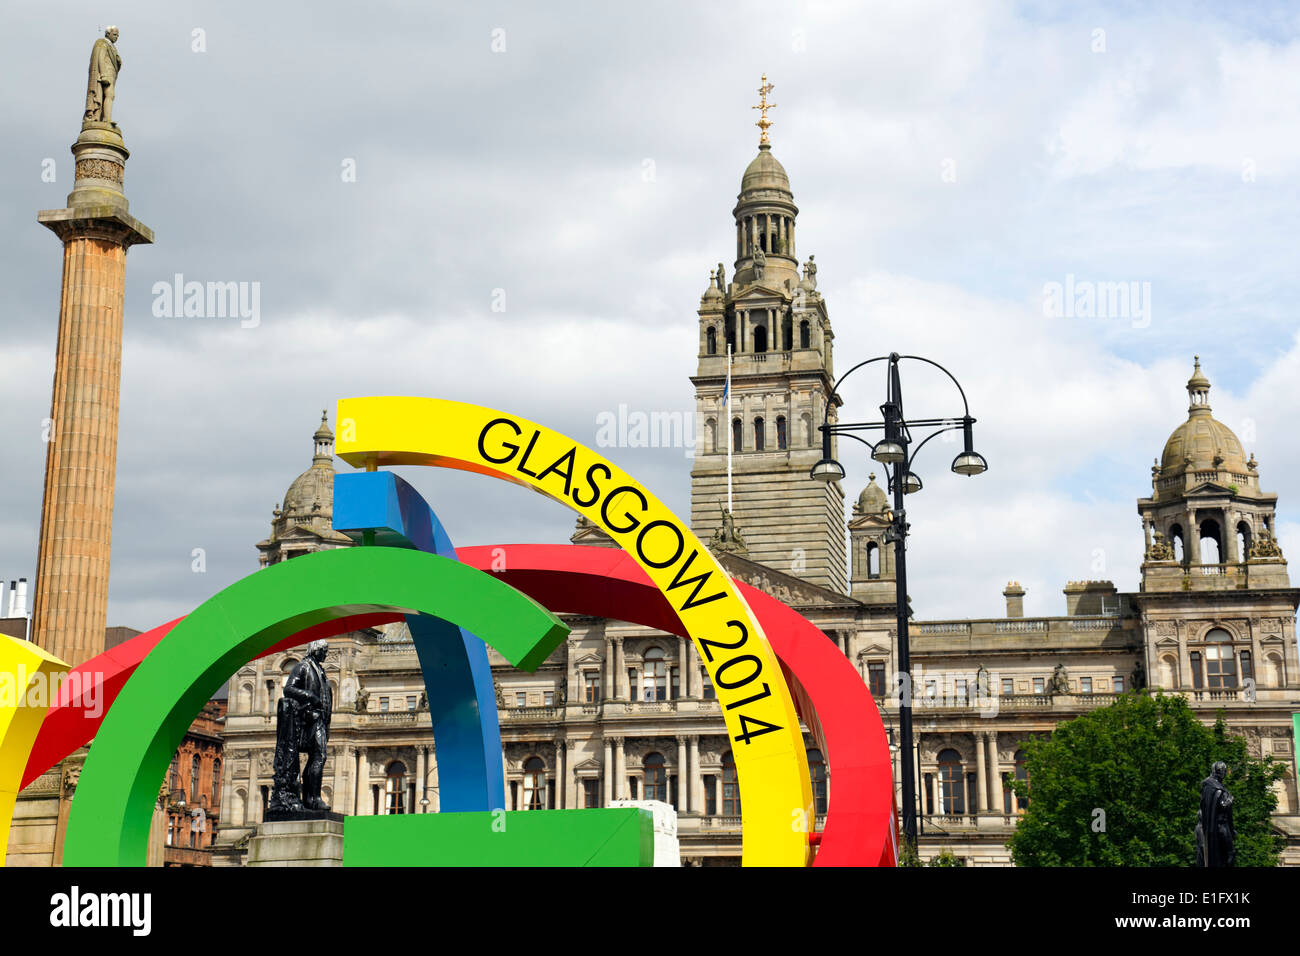 Detalle del logotipo de Glasgow 2014 Commonwealth Games The Big G on George Square en el centro de la ciudad de Glasgow, Escocia, Reino Unido Foto de stock